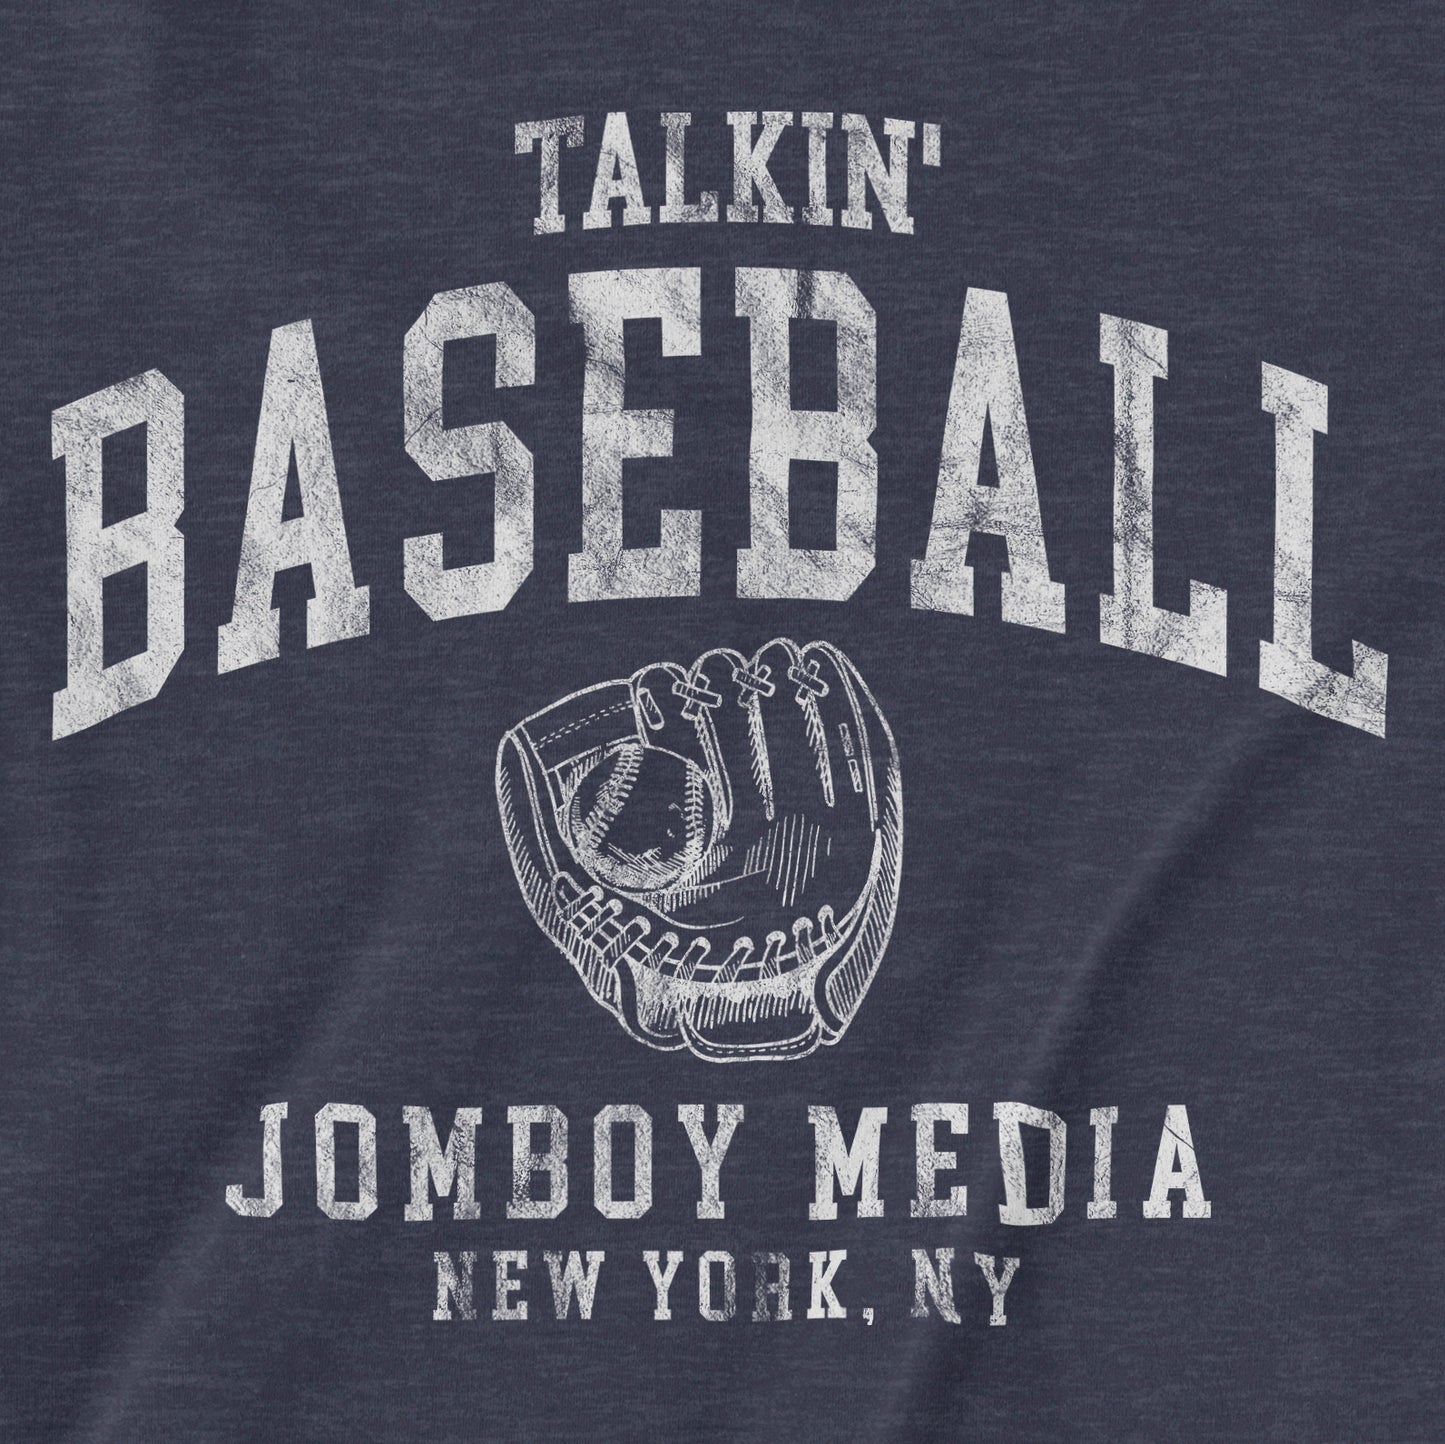 Talkin' Baseball 90's Edition | T-Shirt